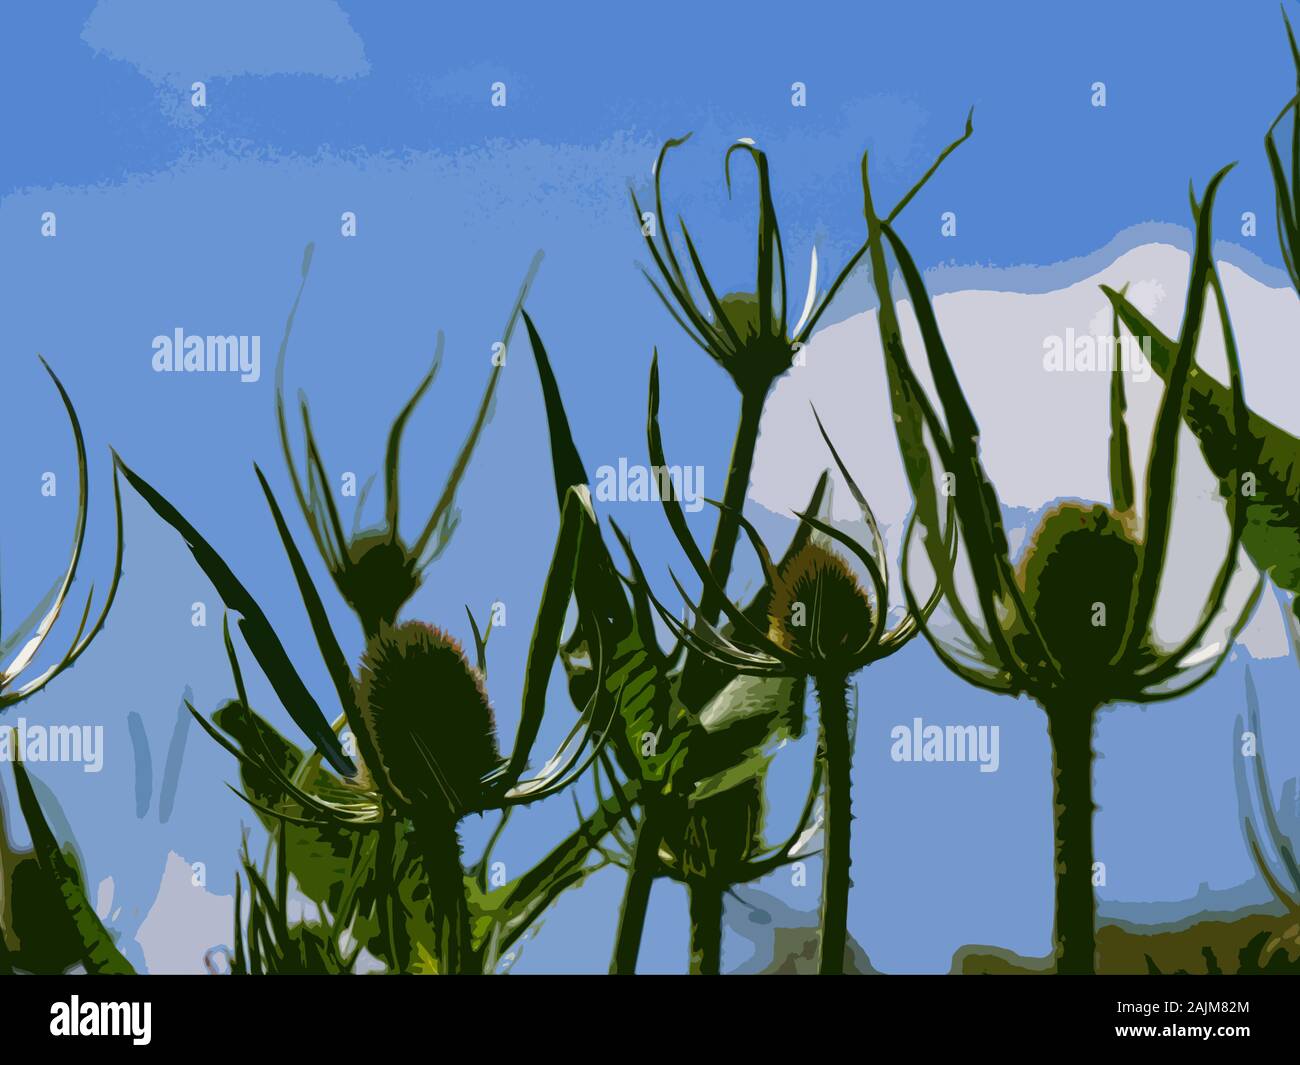 Dipsacus, Teasel flowerheads against a blue sky, photoshop cutout filter Stock Photo